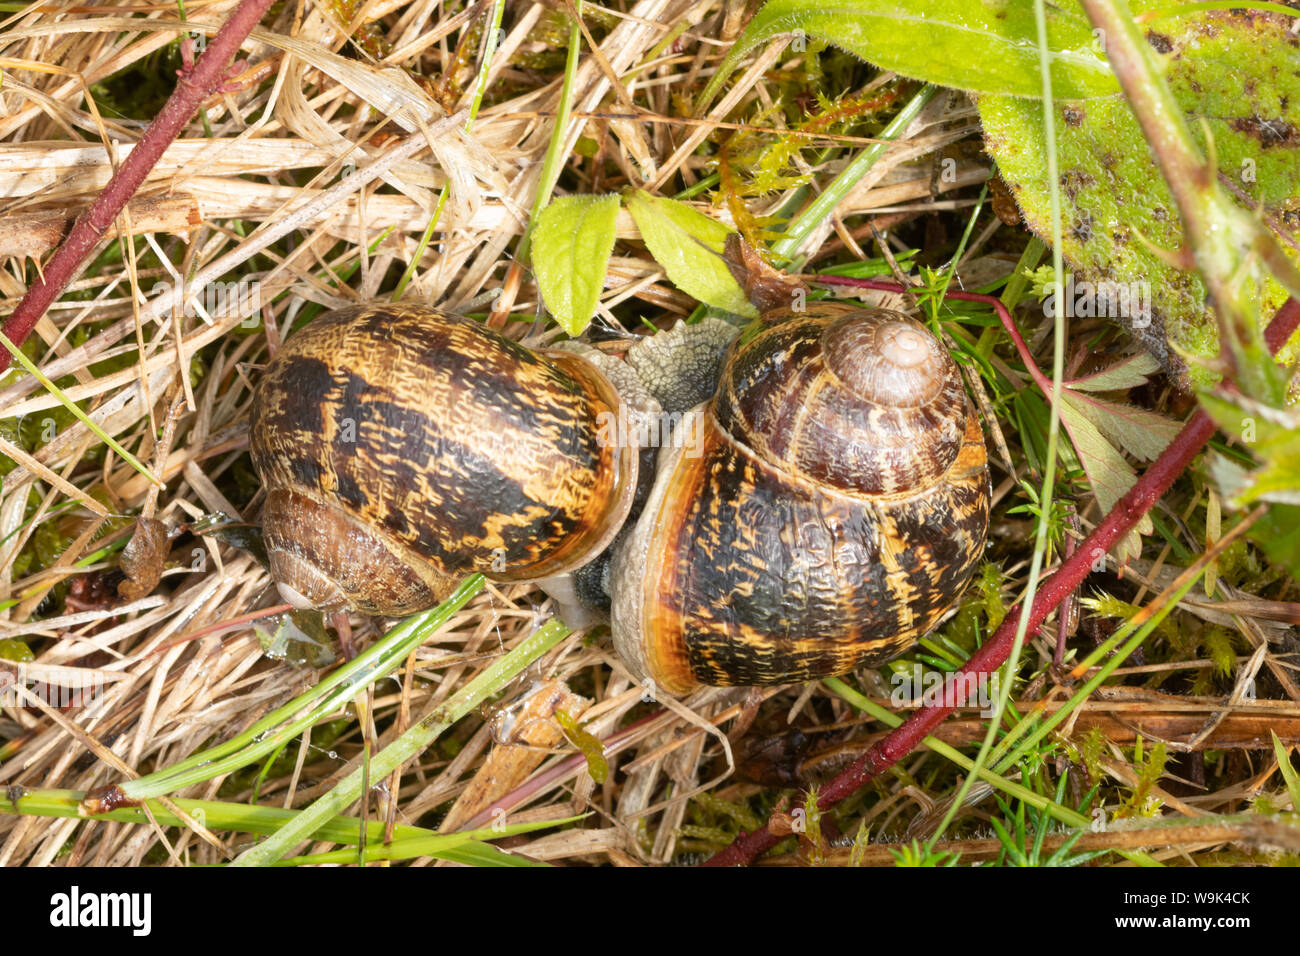 Garden snails mating (Helix aspersa or Cornu aspersum) Stock Photo